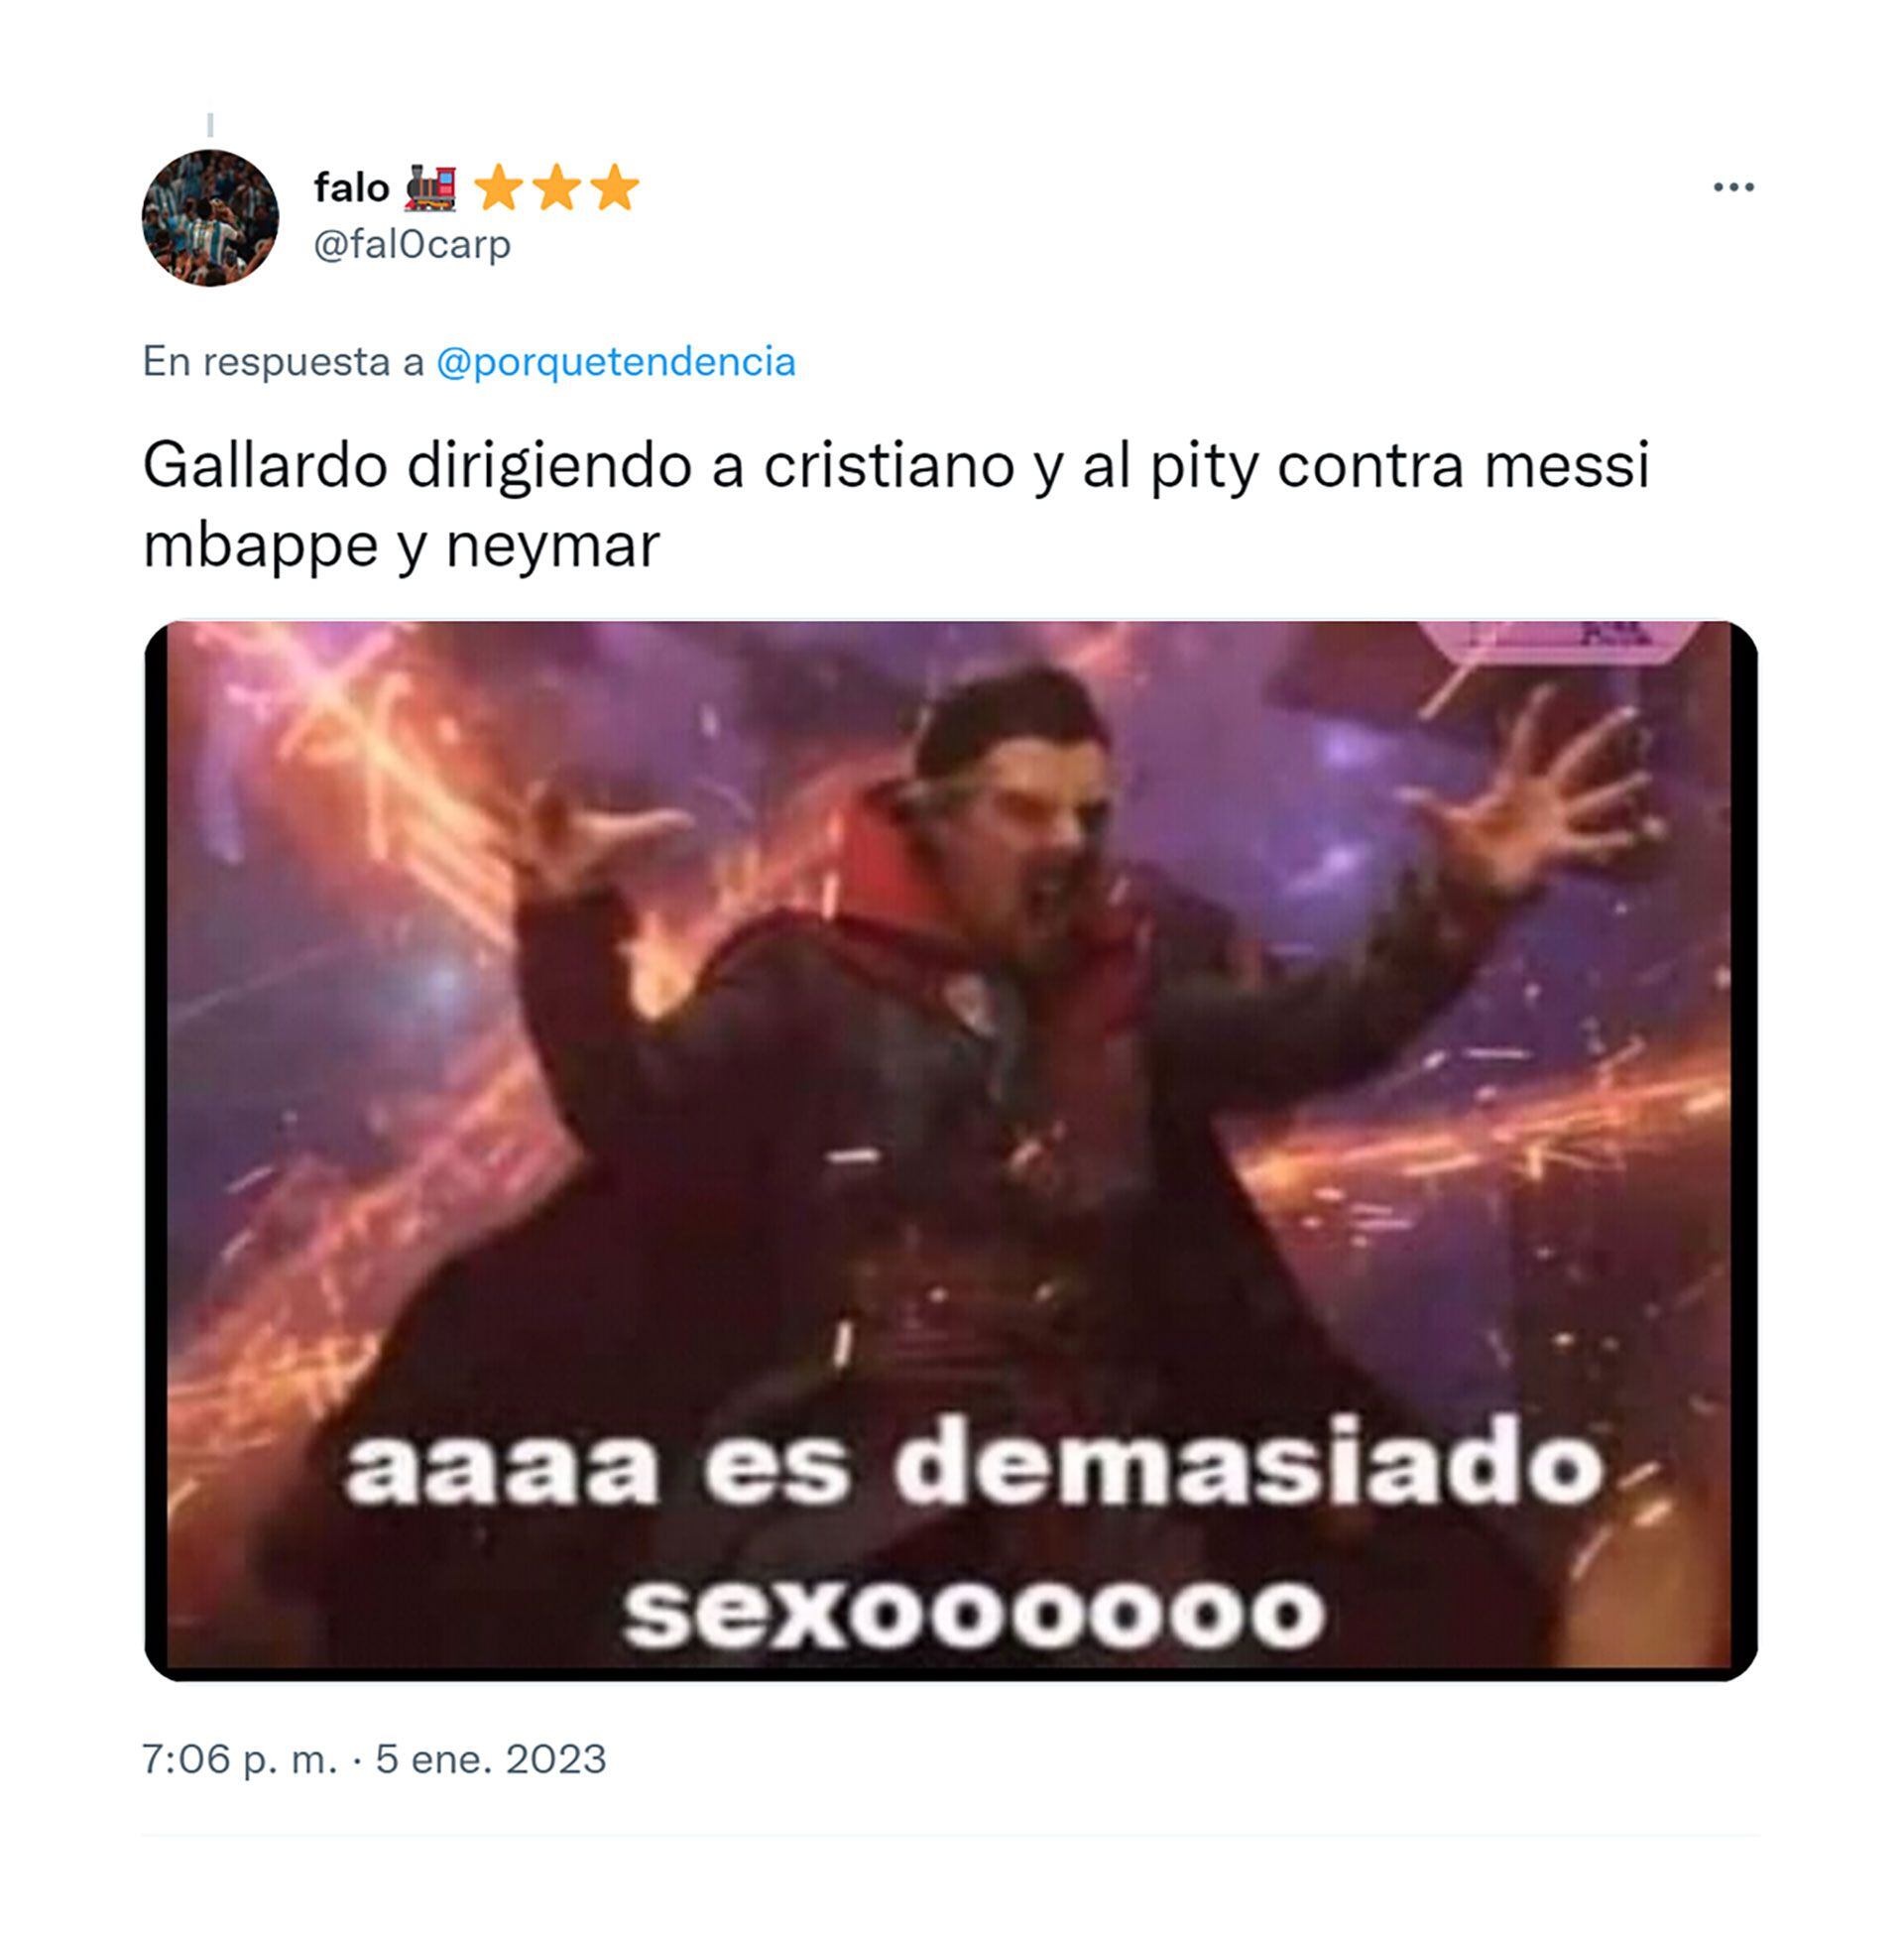 memes Gallardo dirigirá a Cristiano y Pity Martínez vs Messi